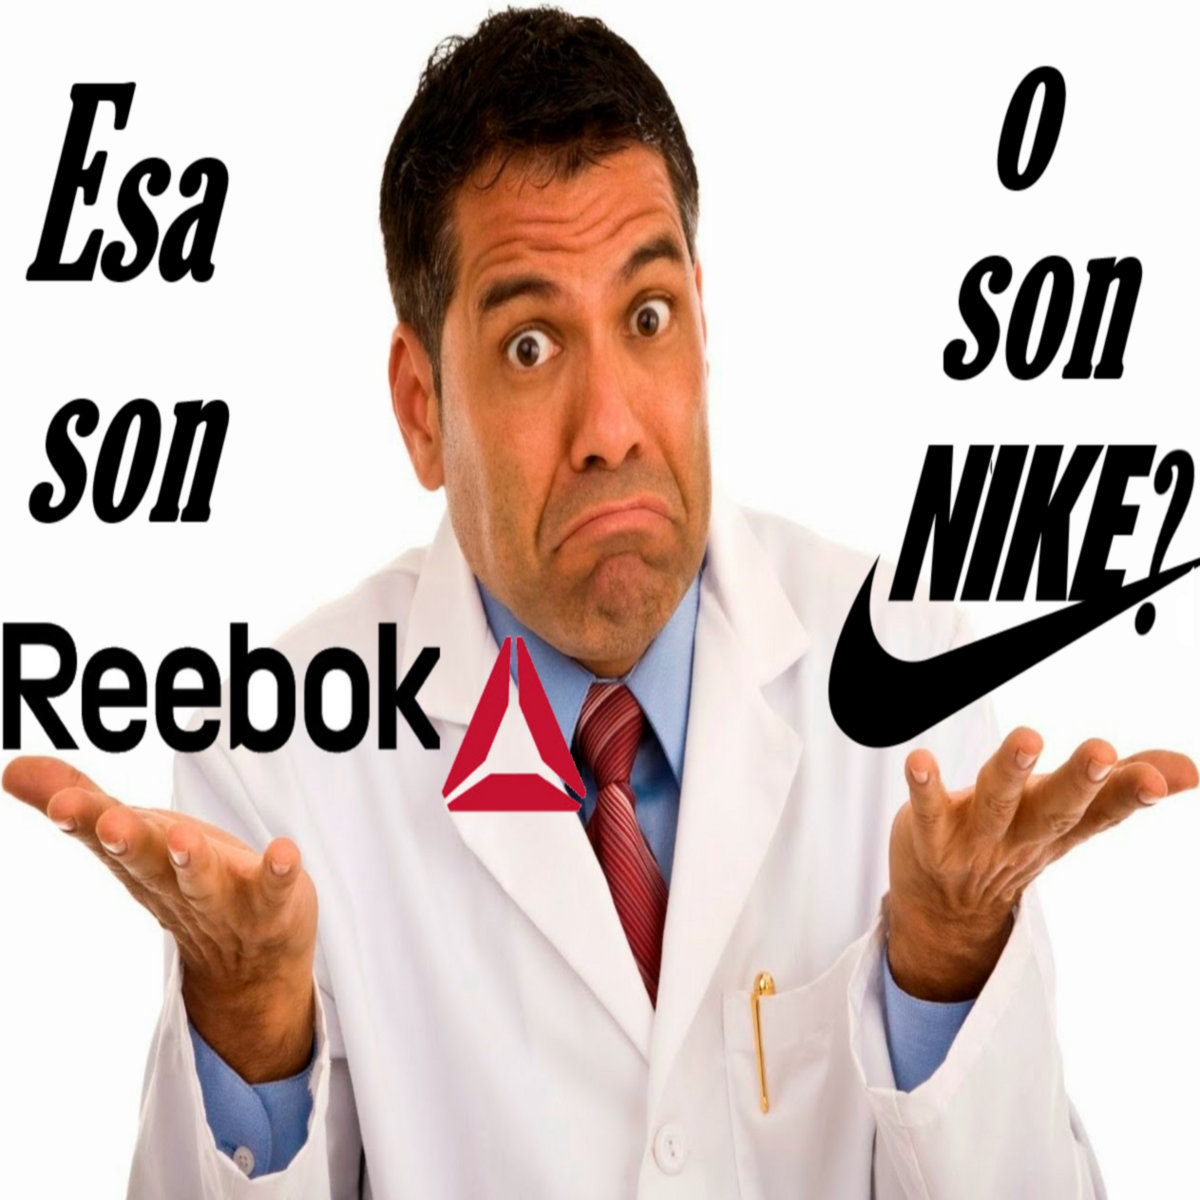 Esa son Reebok o son Nike? | SoundsIUse2DrownMyEmotion